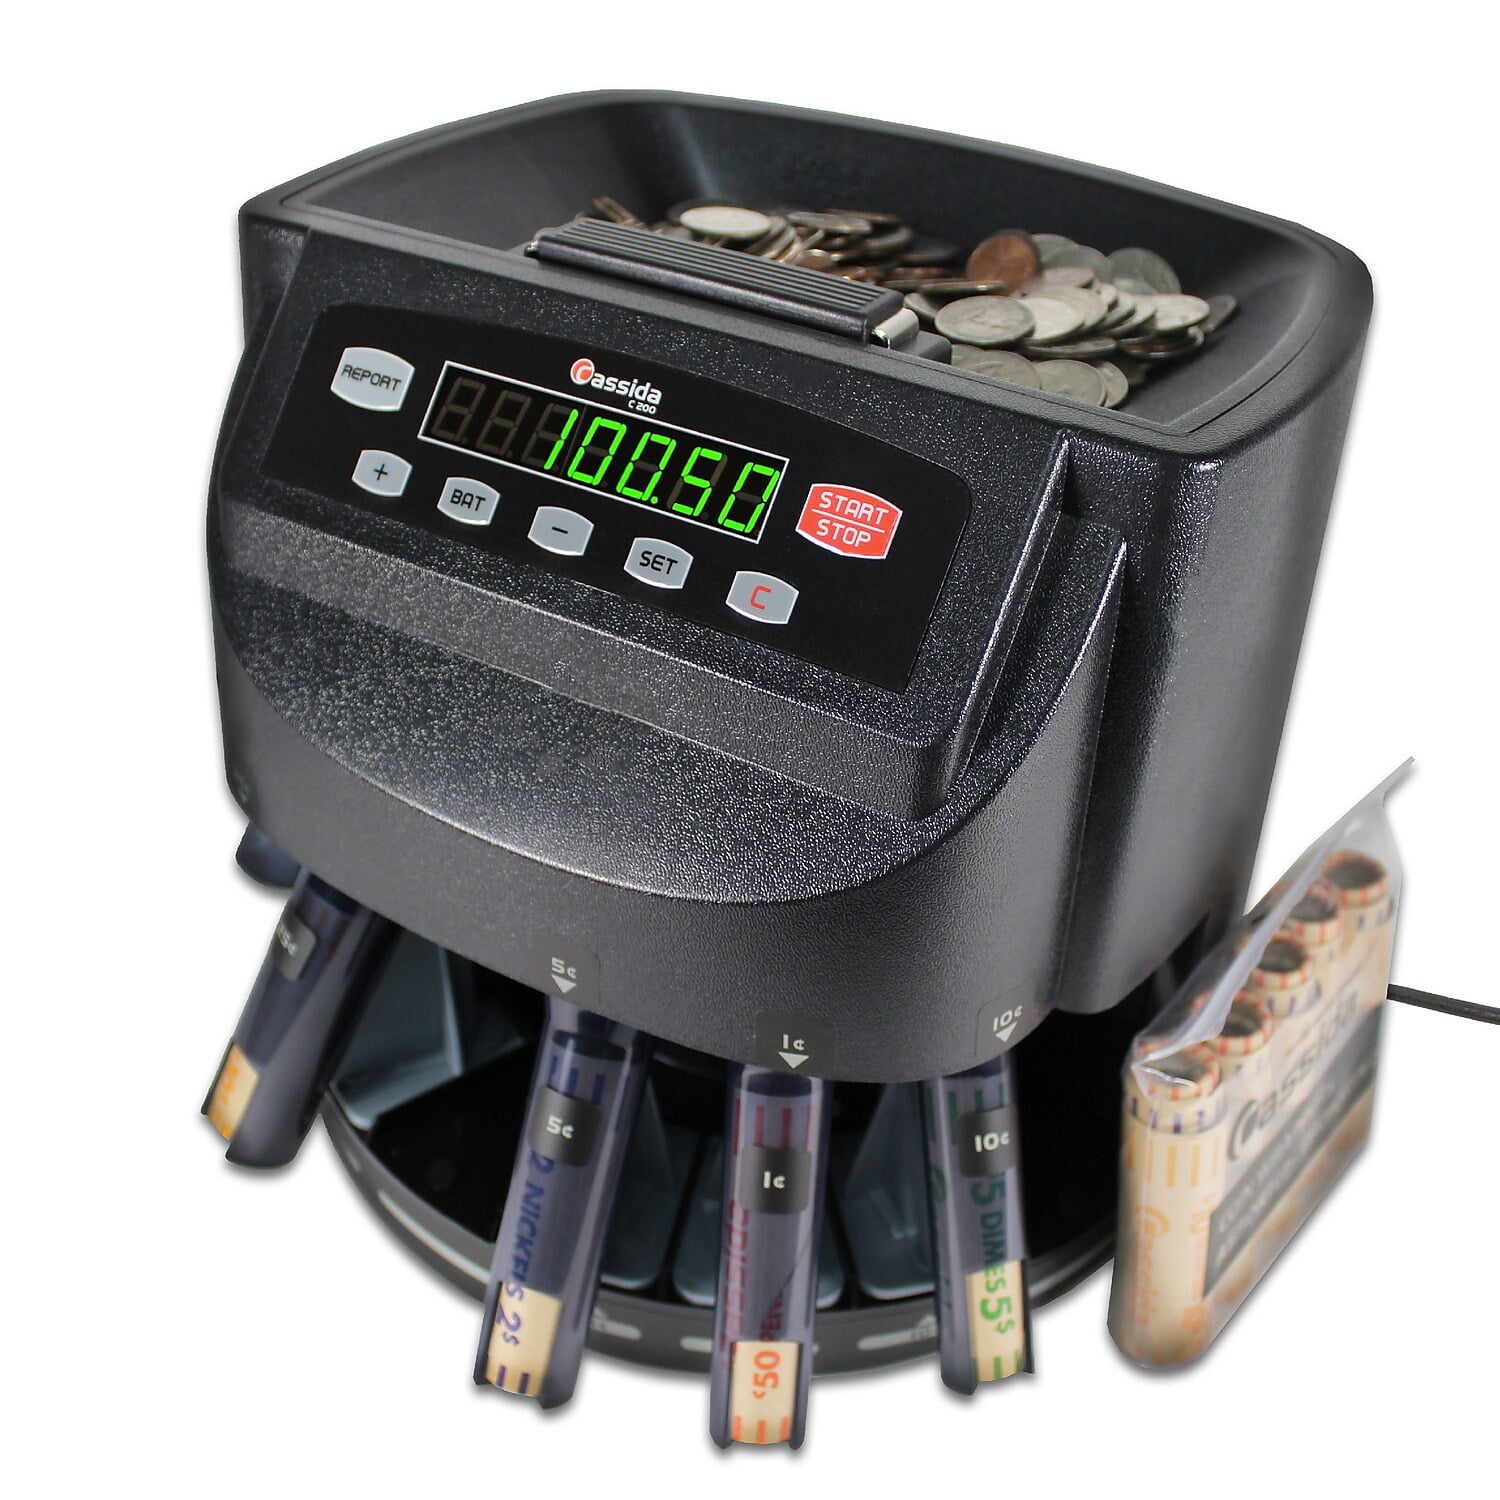 CC-301 Coin Counter